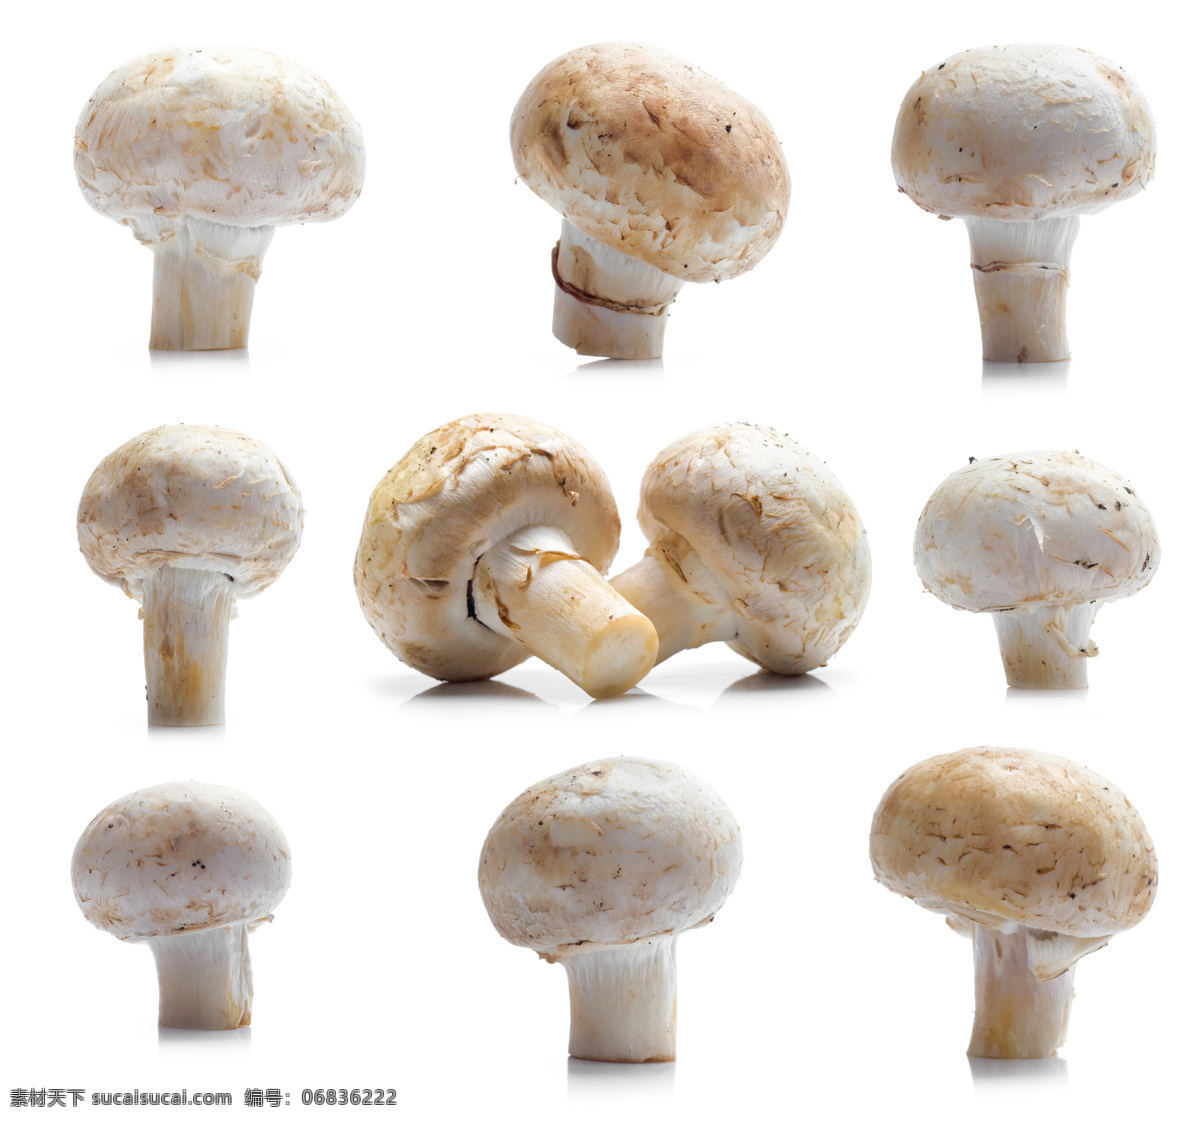 蘑菇 菌类 生物世界 蔬菜 香菇 蔬菜主题 风景 生活 旅游餐饮